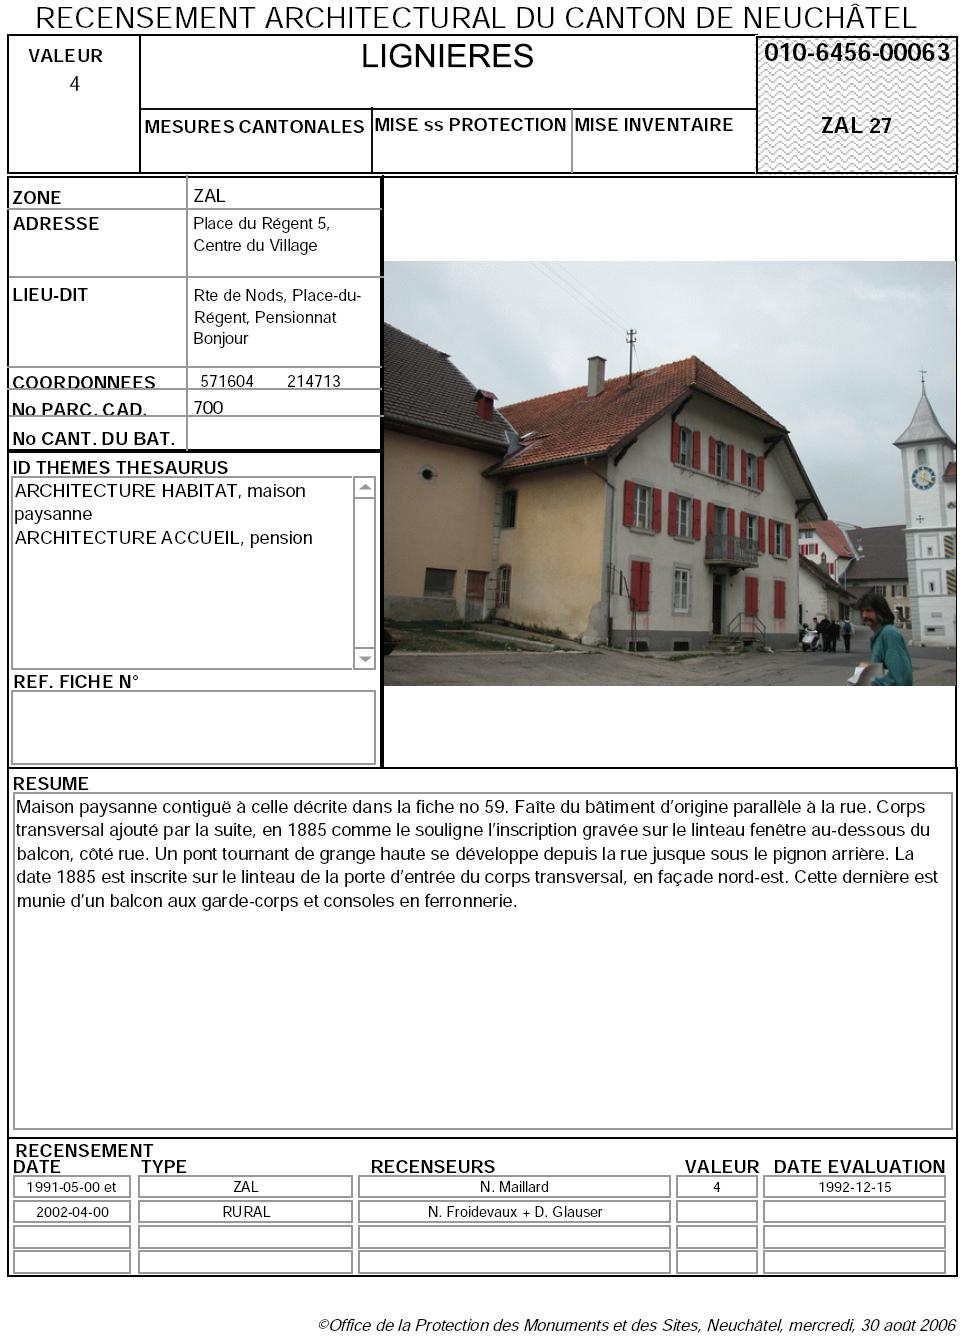 Recensement architectural du canton de Neuchâtel: Fiche 010-6456-00063